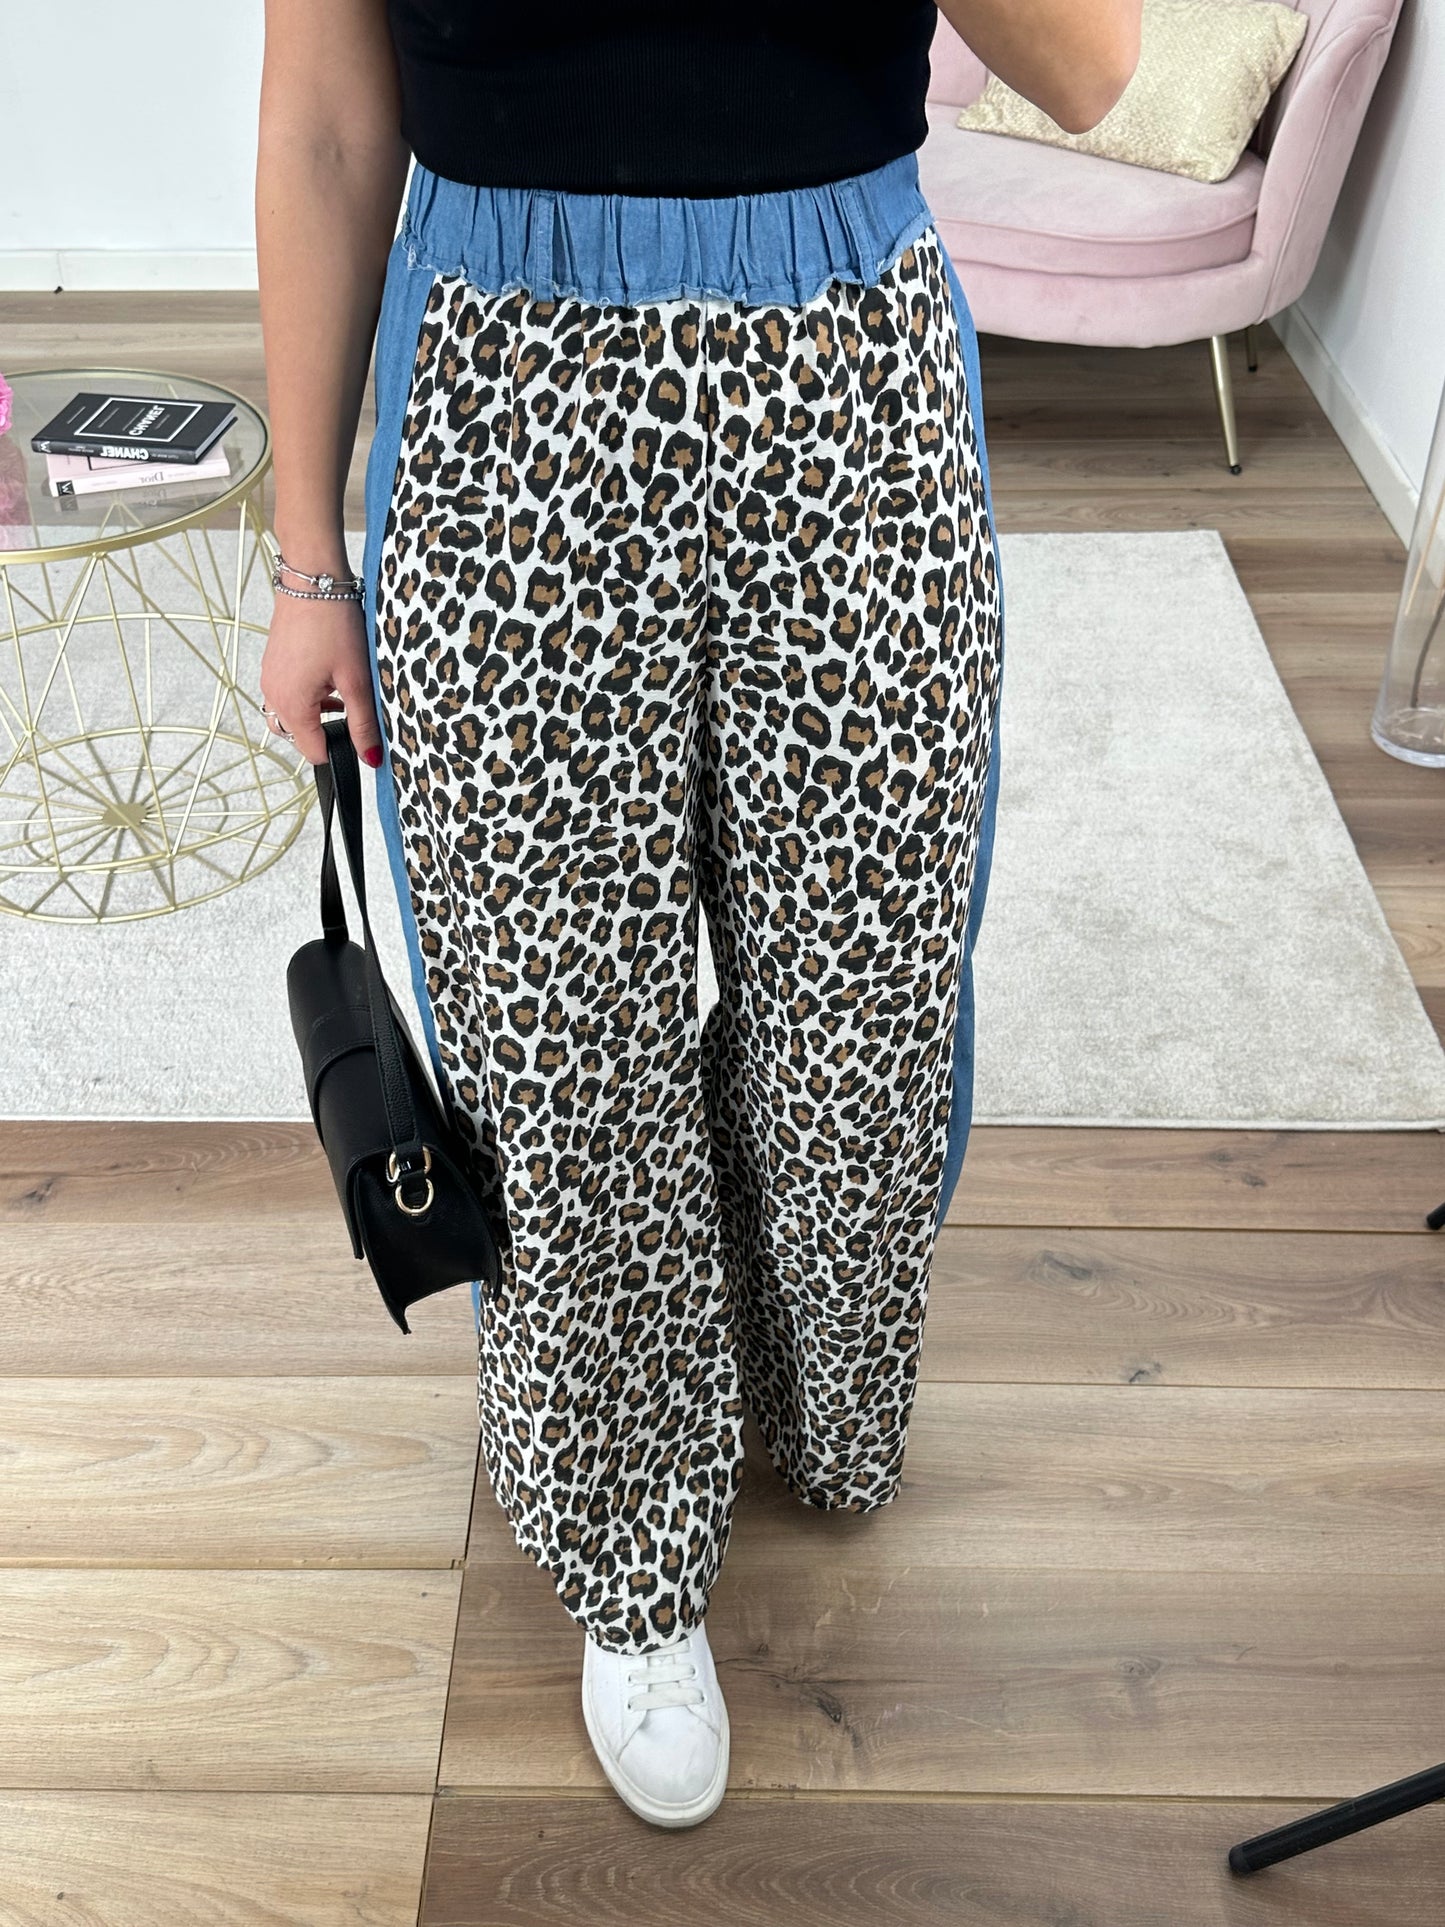 Pantaloni leopard